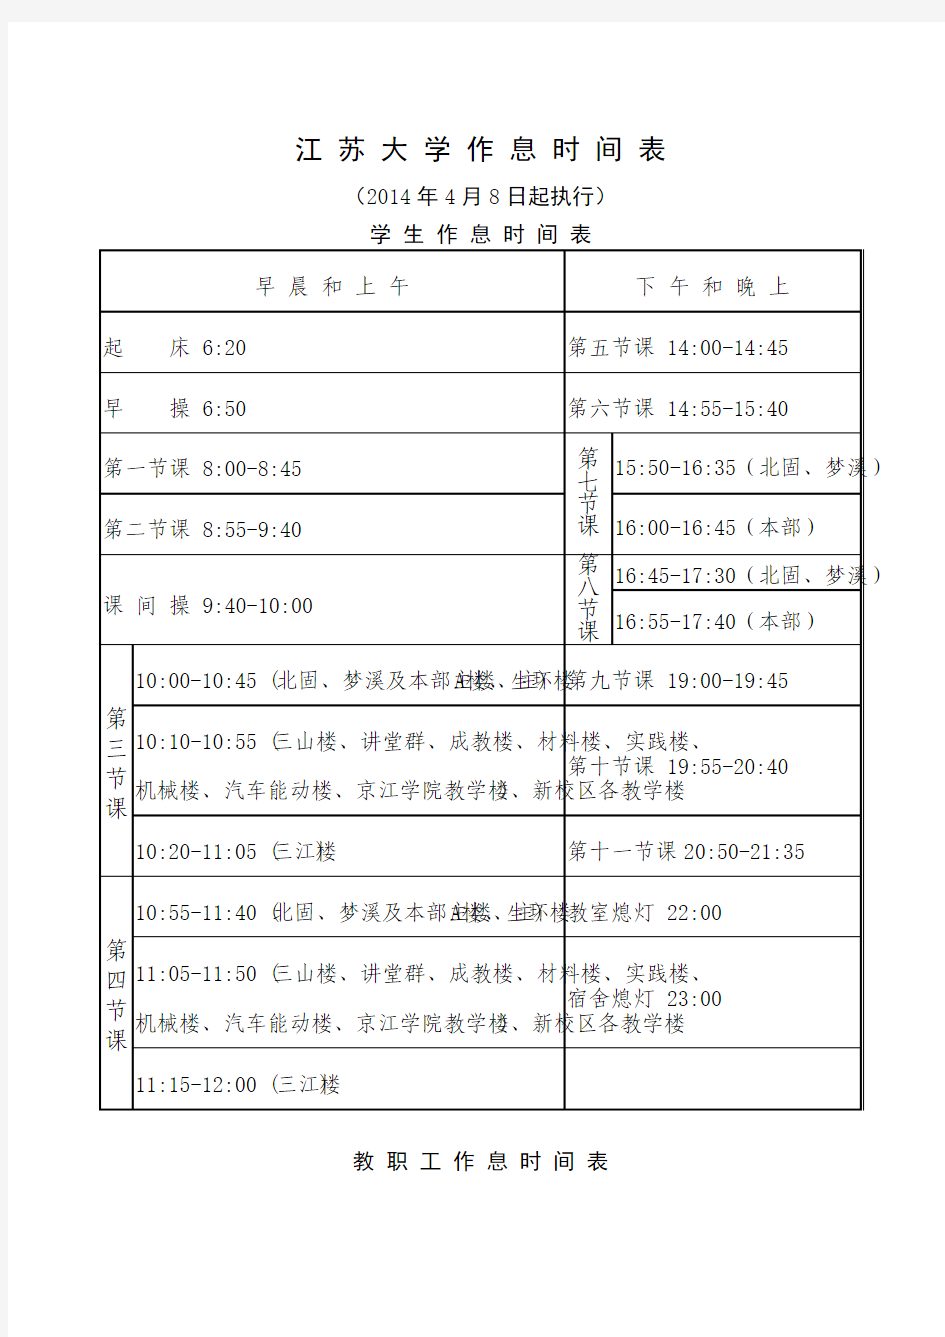 江 苏 大 学 作 息 时 间 表